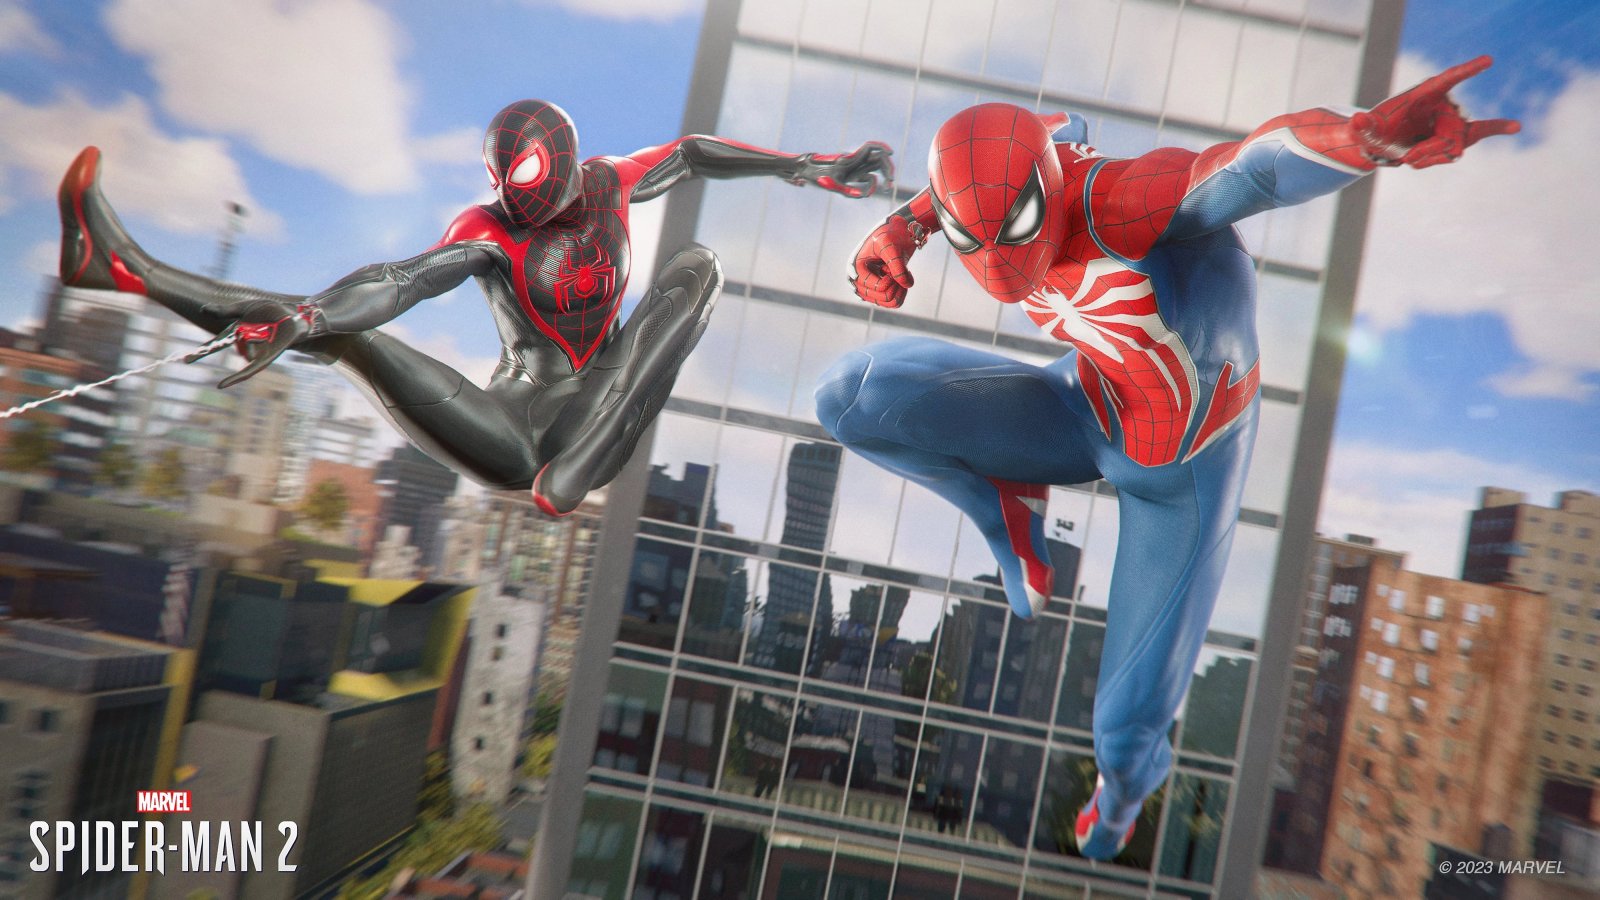 Marvel's Spider-Man 2: due nuove immagini con Peter e Miles pubblicate da Insomniac Games